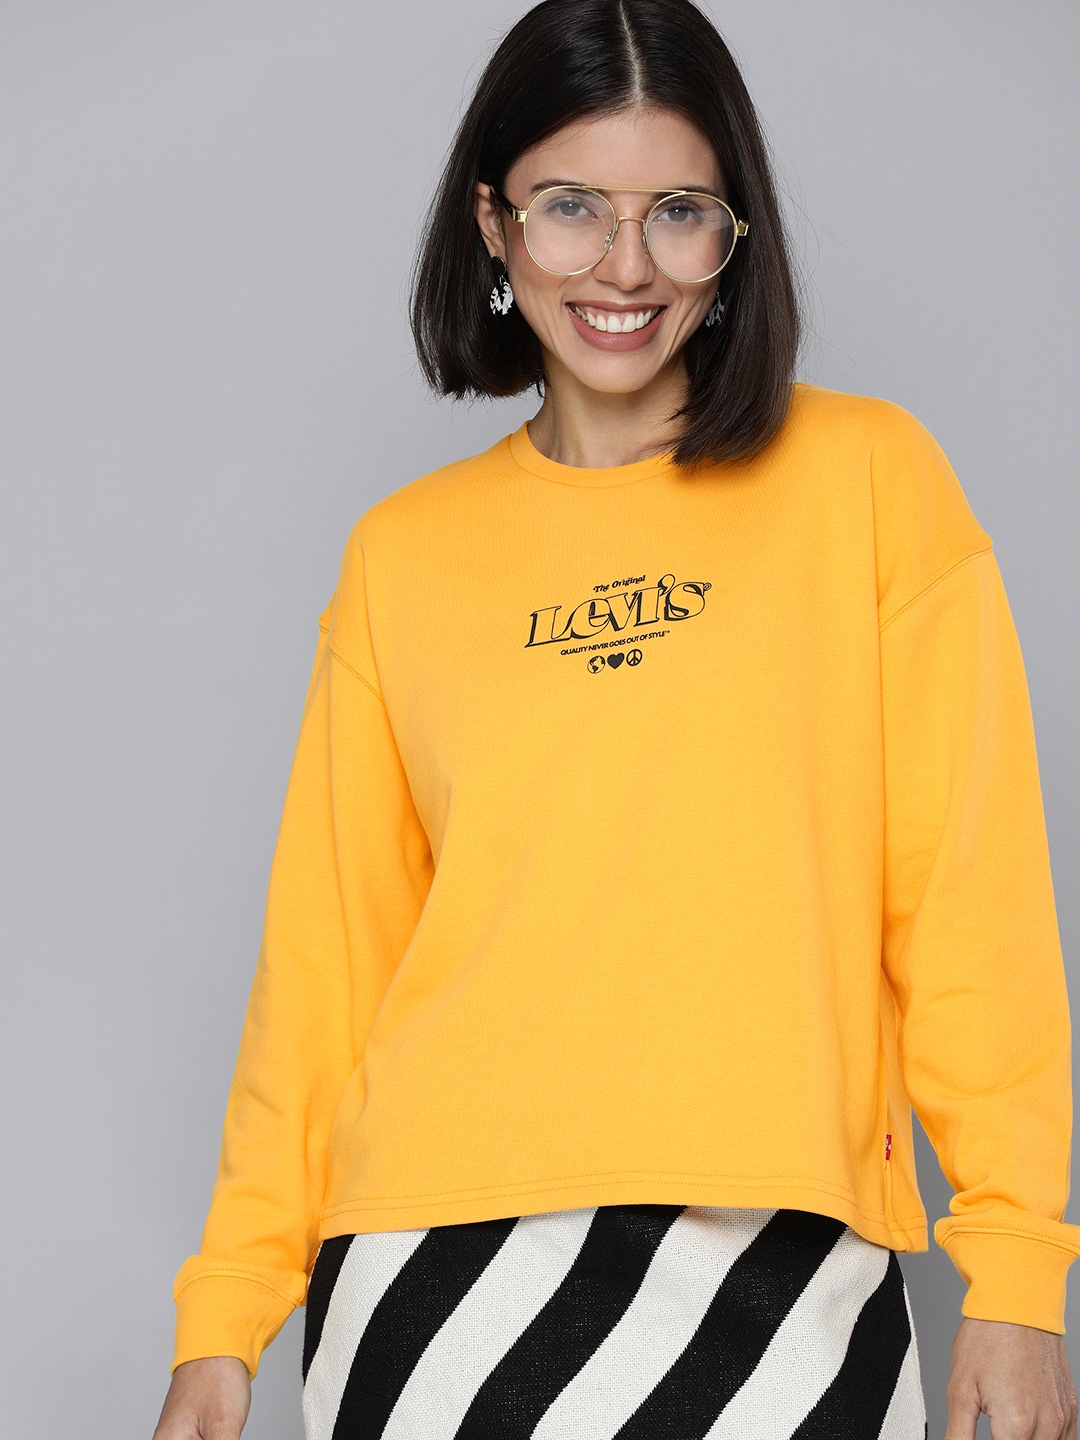 Levis Women Yellow Printed Drop-Shoulder Sweatshirt Price in India